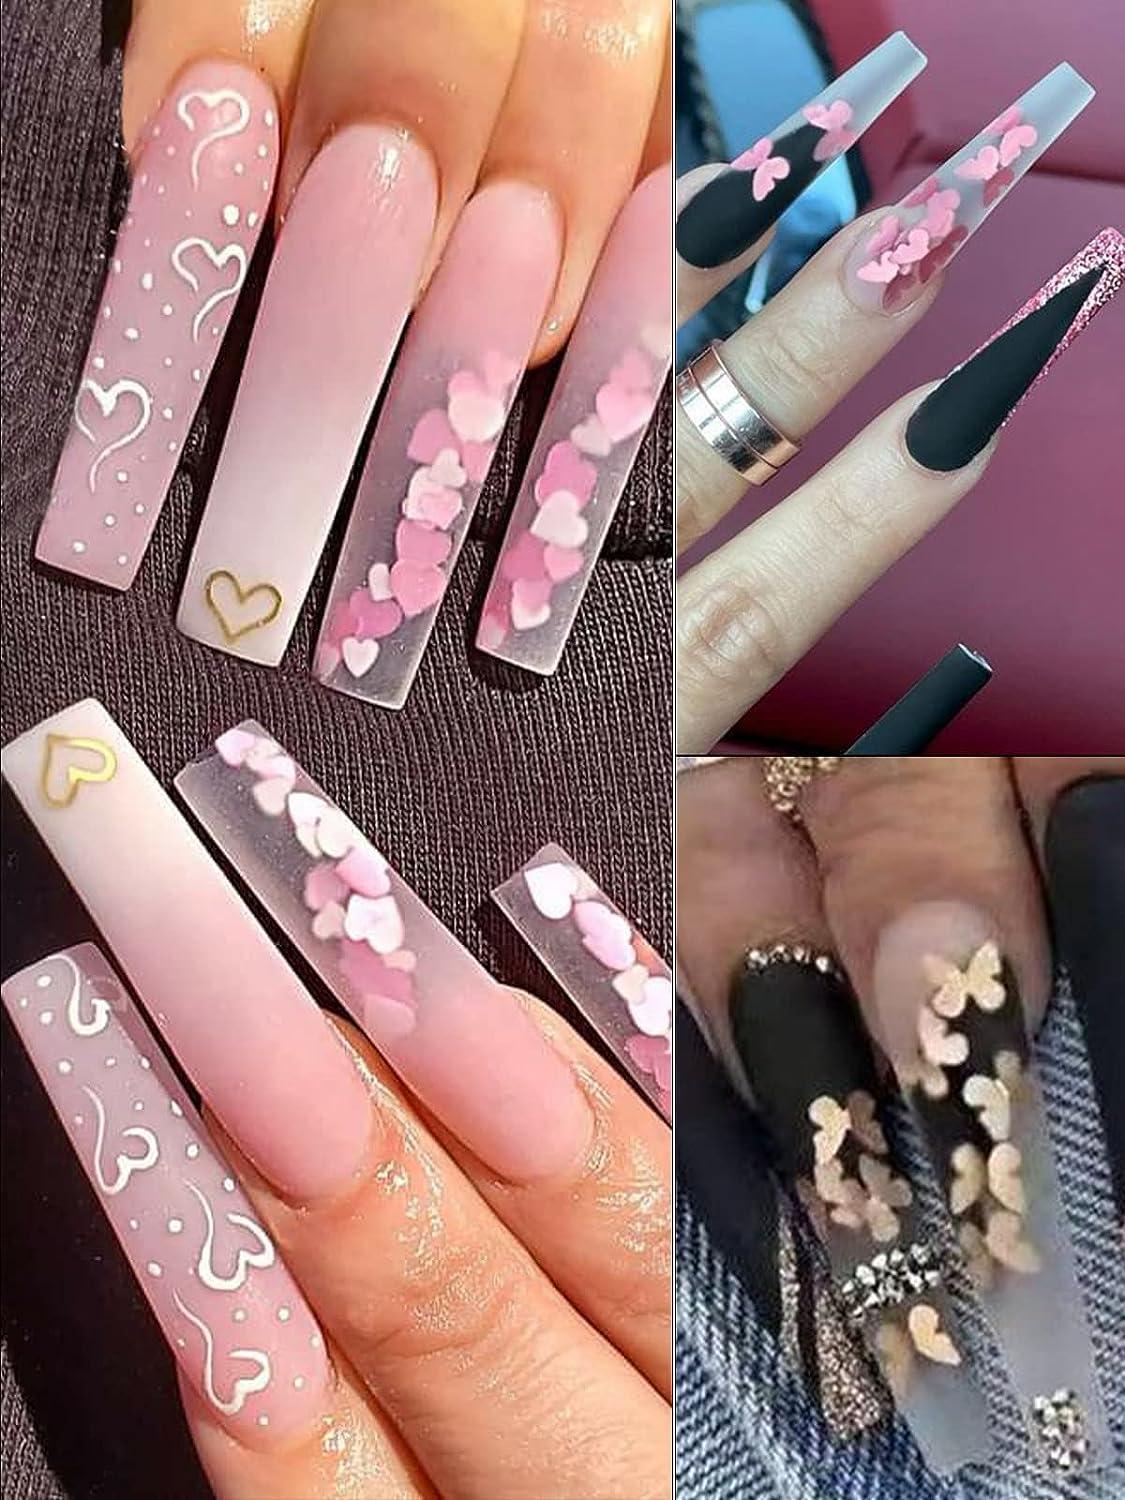 Ombre and glitter acrylic nails, don't... - Ten salon Napier | Facebook